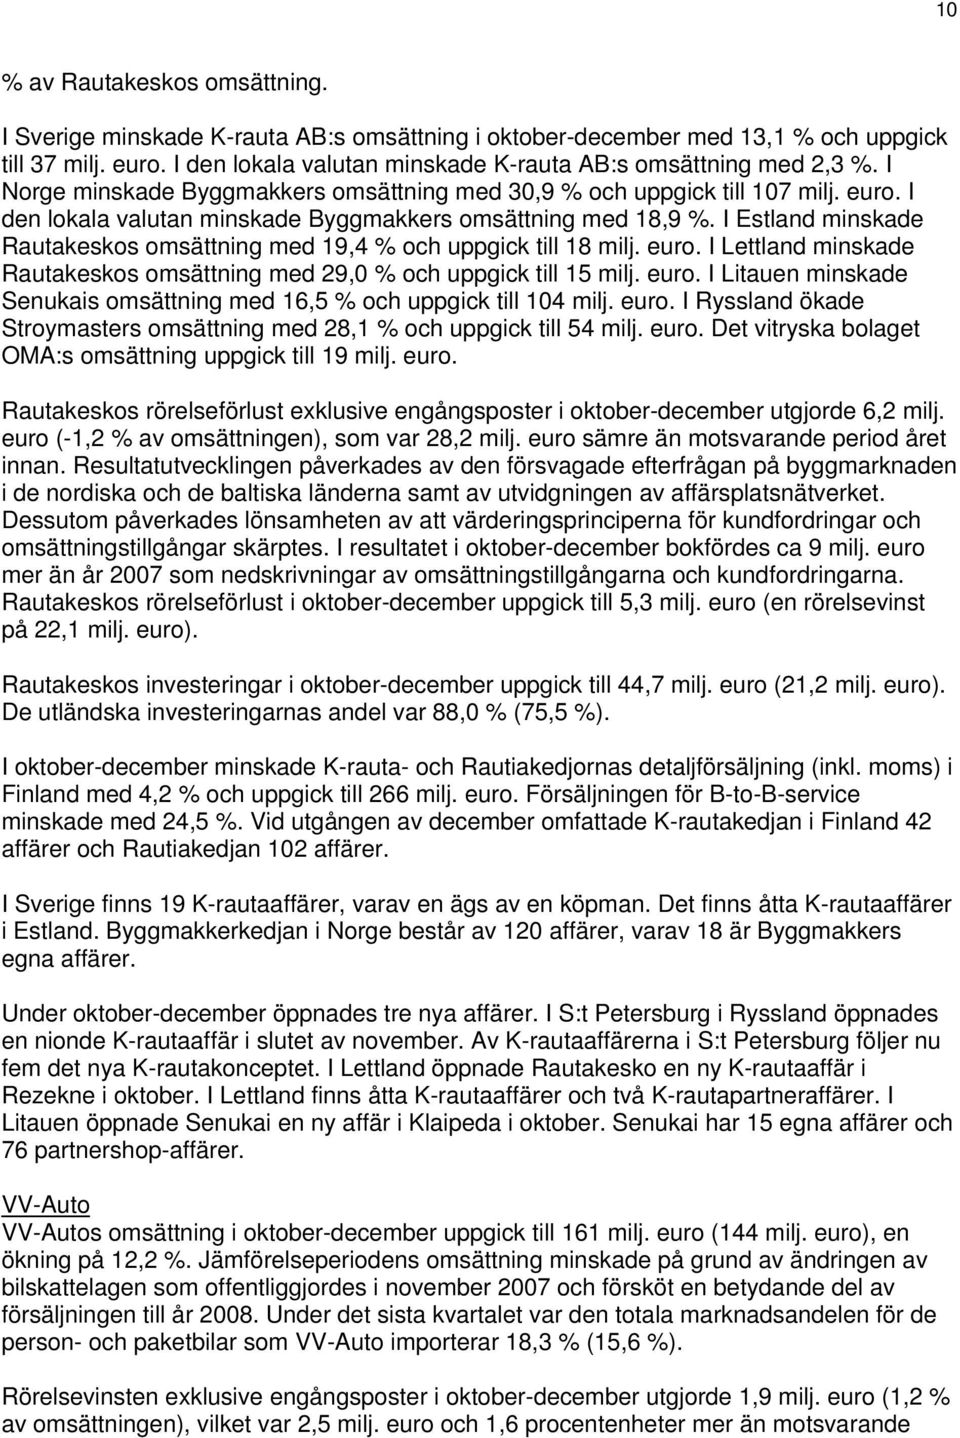 I Estland minskade Rautakeskos omsättning med 19,4 % och uppgick till 18 milj.. I Lettland minskade Rautakeskos omsättning med 29,0 % och uppgick till 15 milj.